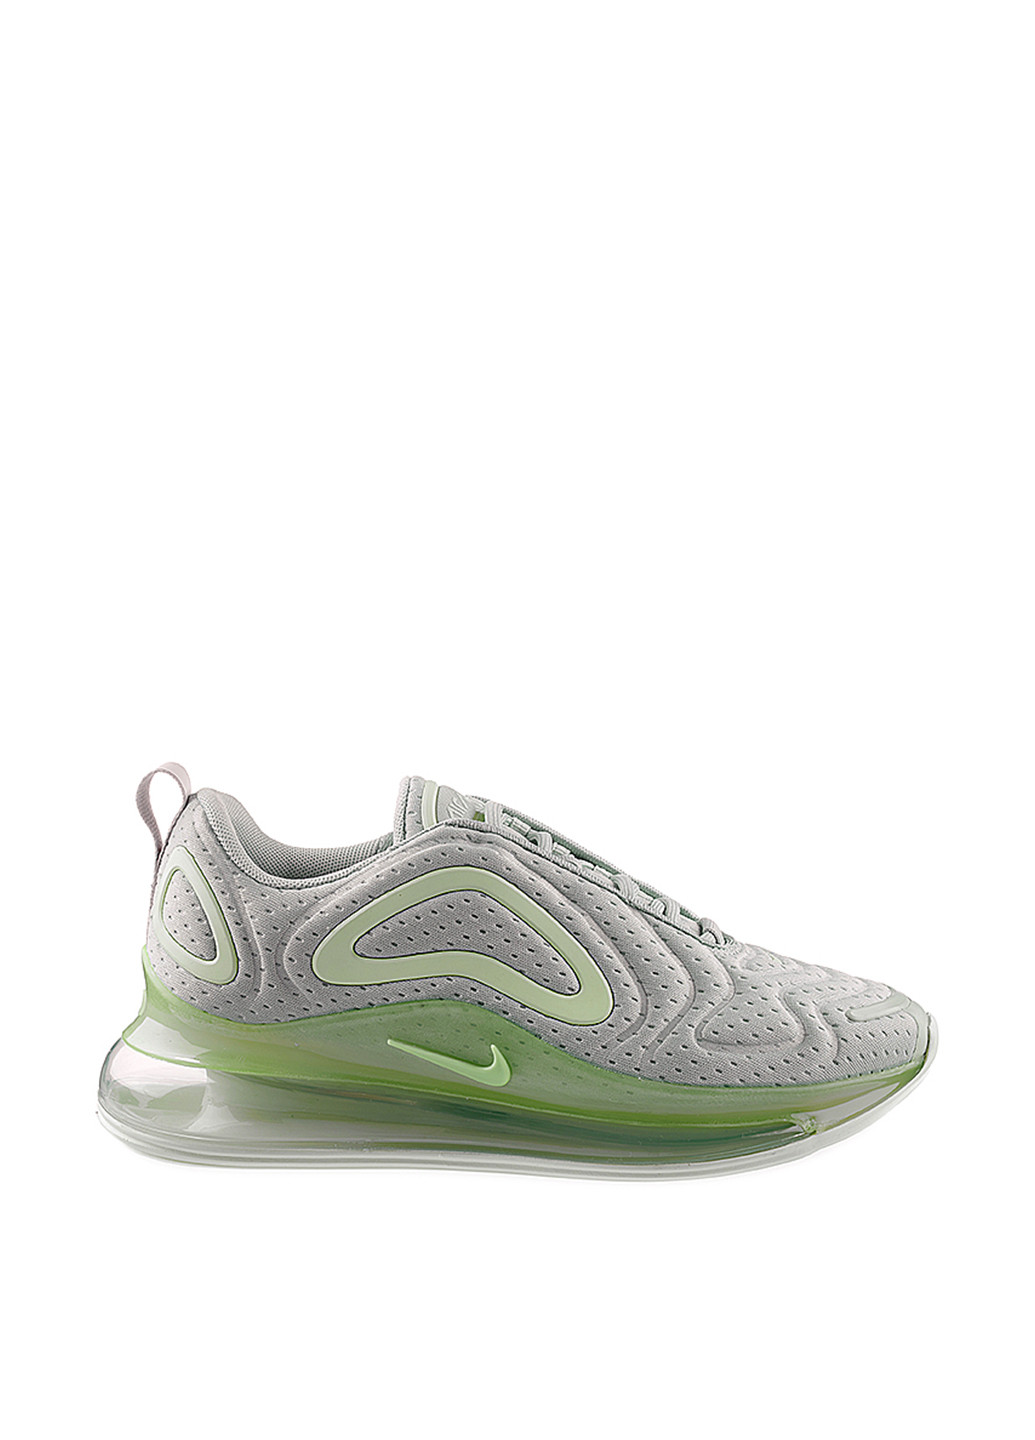 Цветные демисезонные кроссовки Nike W AIR MAX 720 - MESH